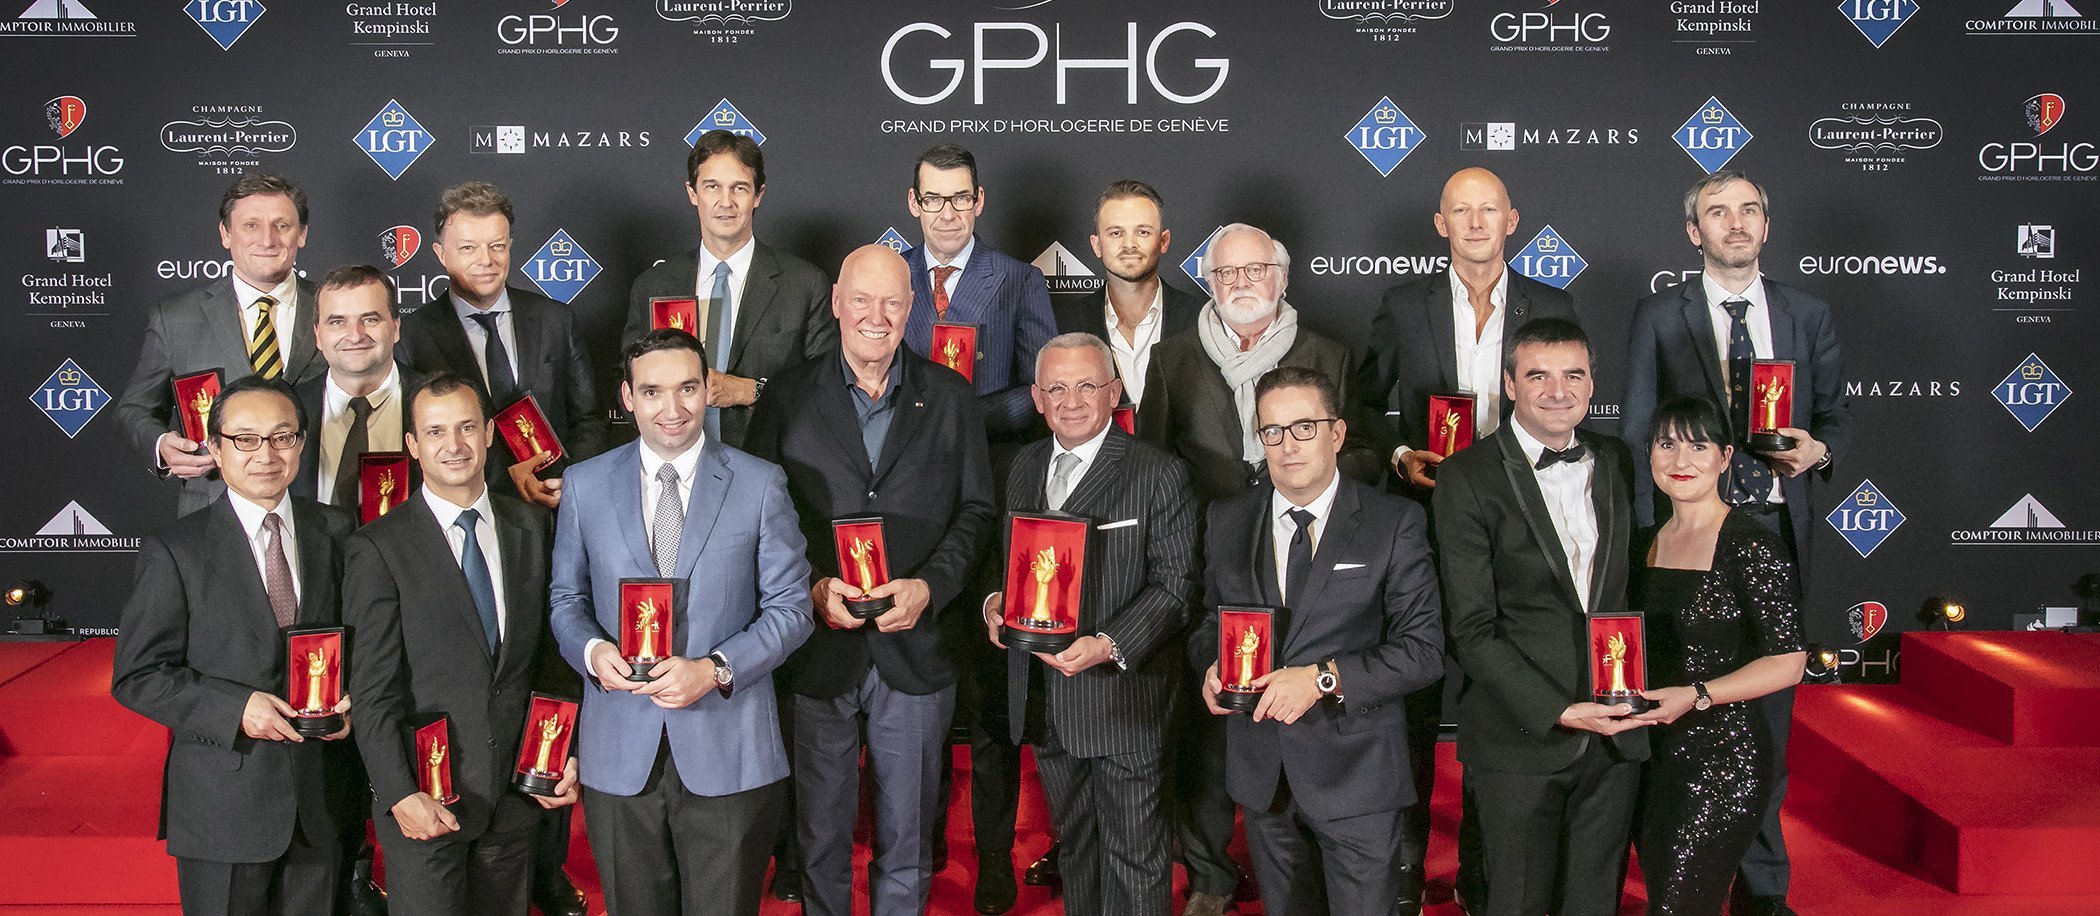 Grand Prix d’Horologerie de Geneve 2018